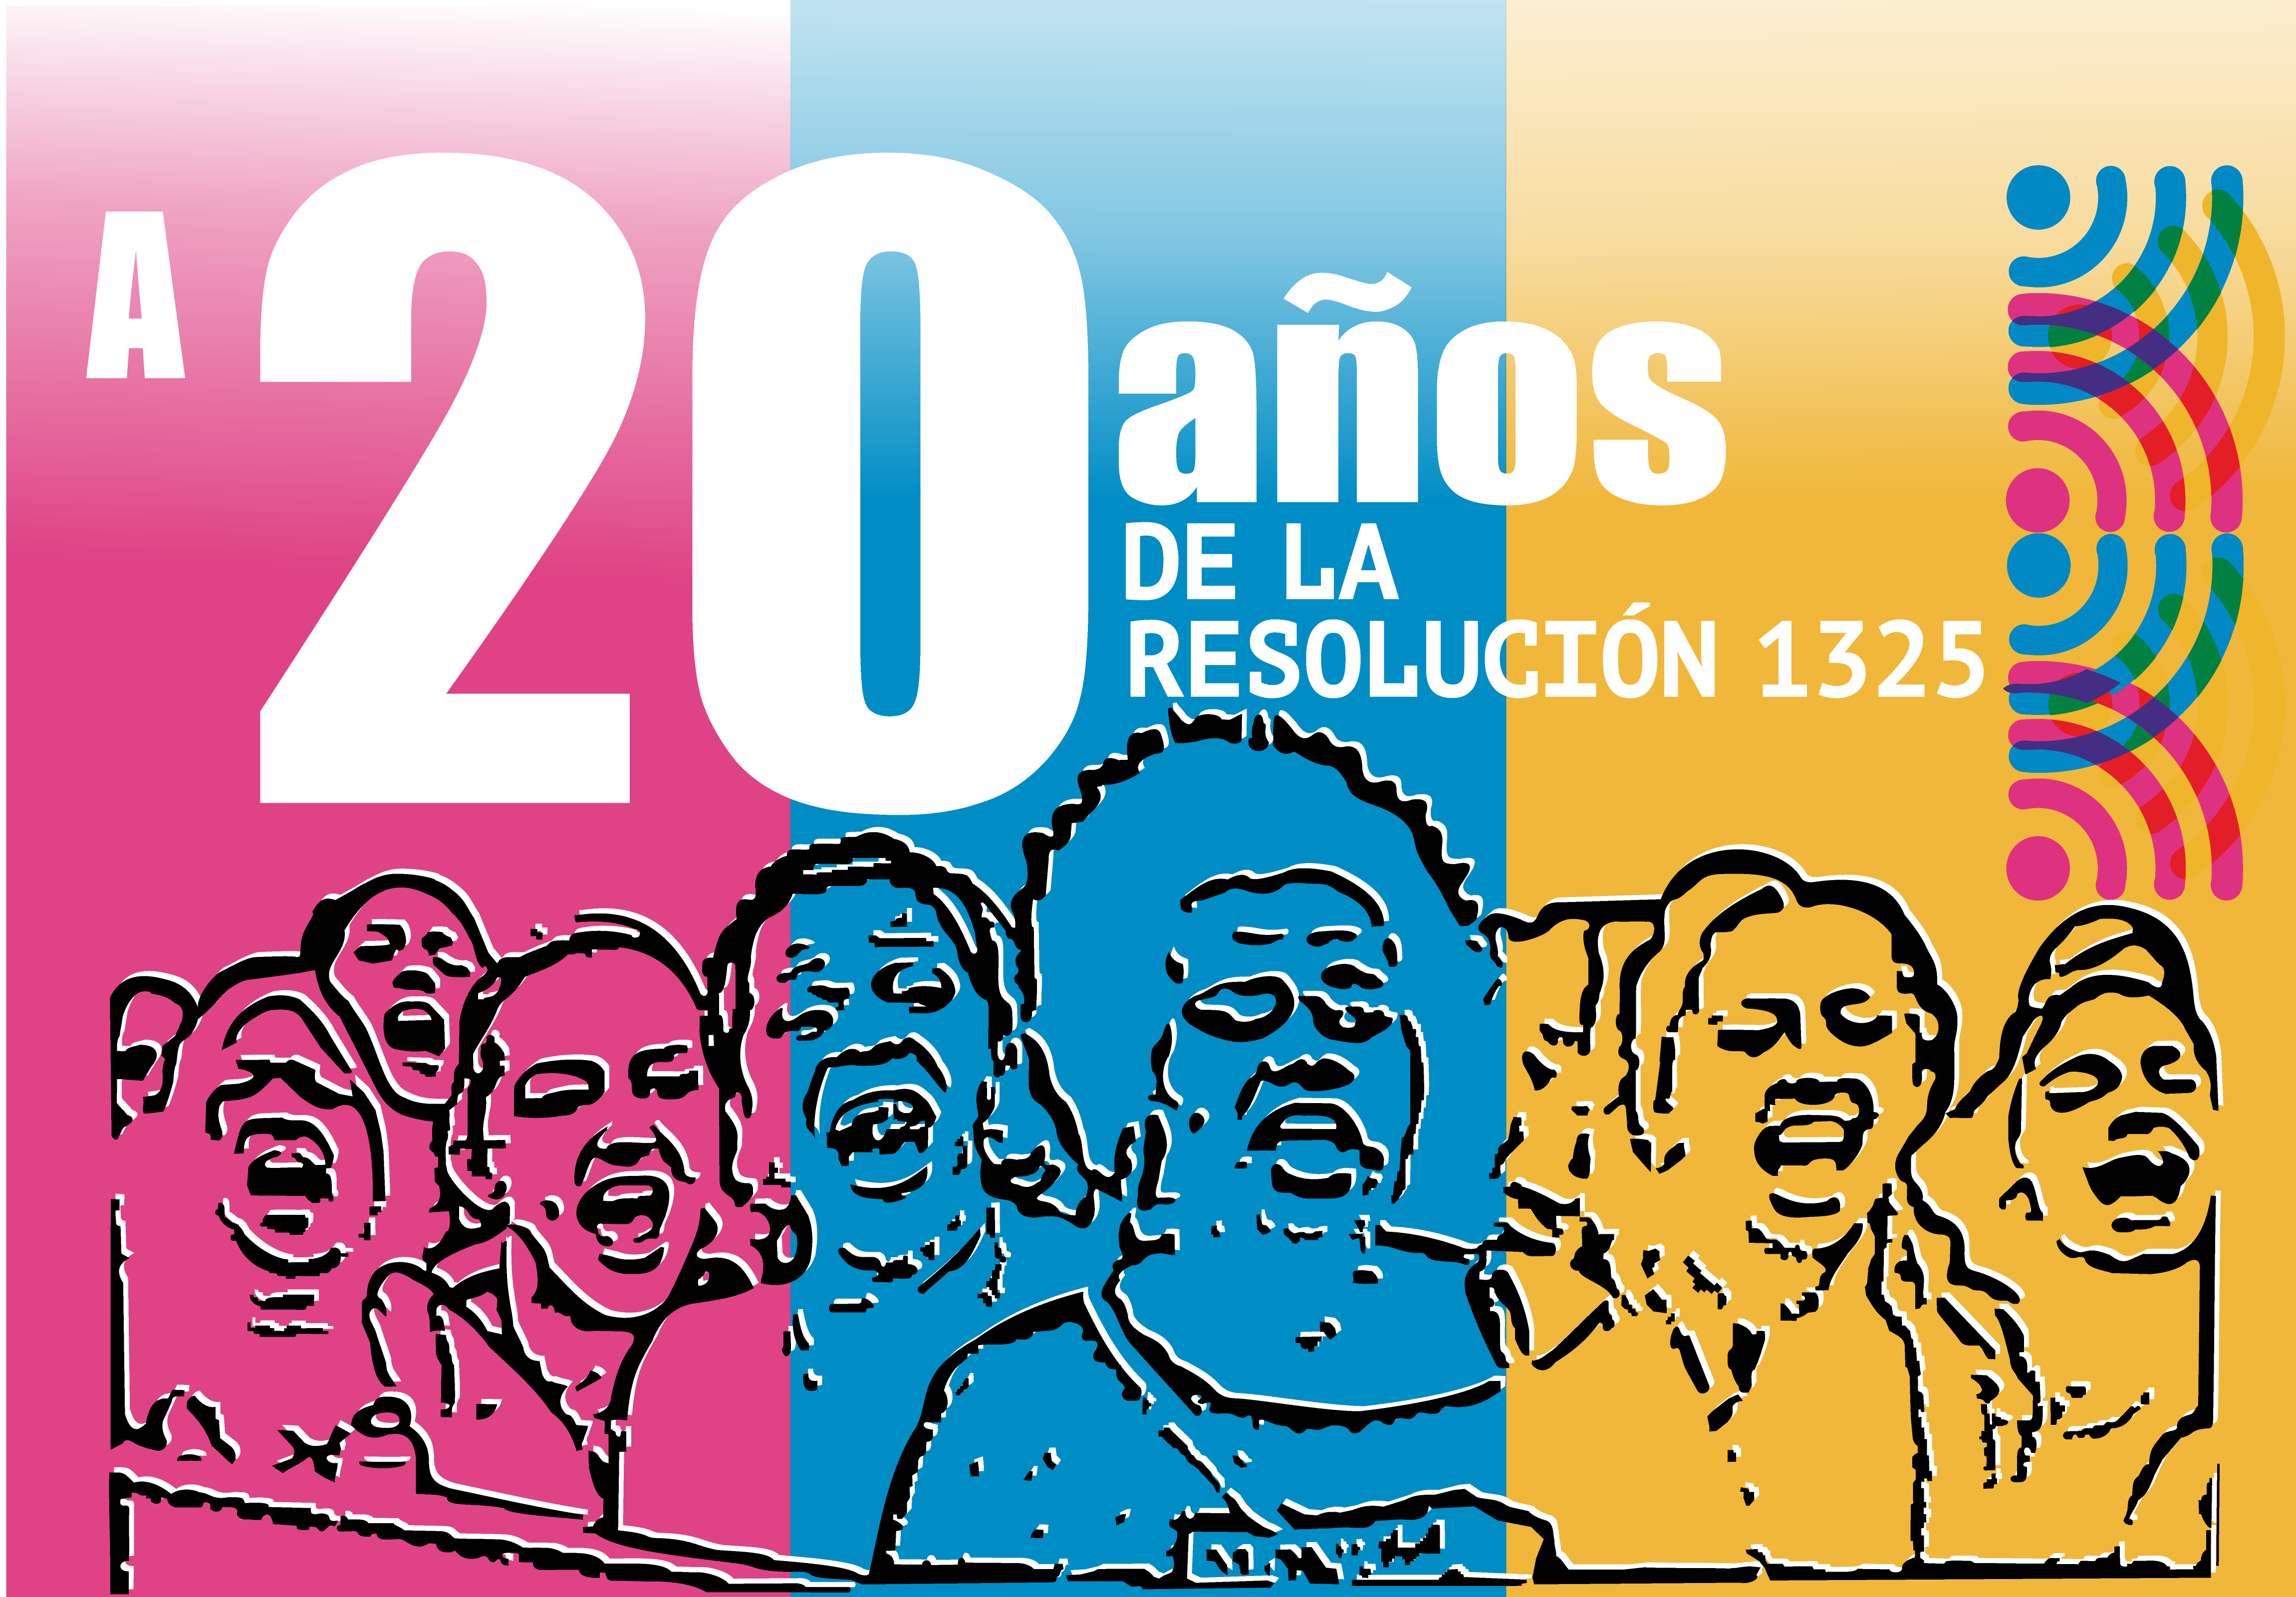 A 20 años de la Resolución 1325, las organizaciones de mujeres revisa su implementación en Colombia durante 2019